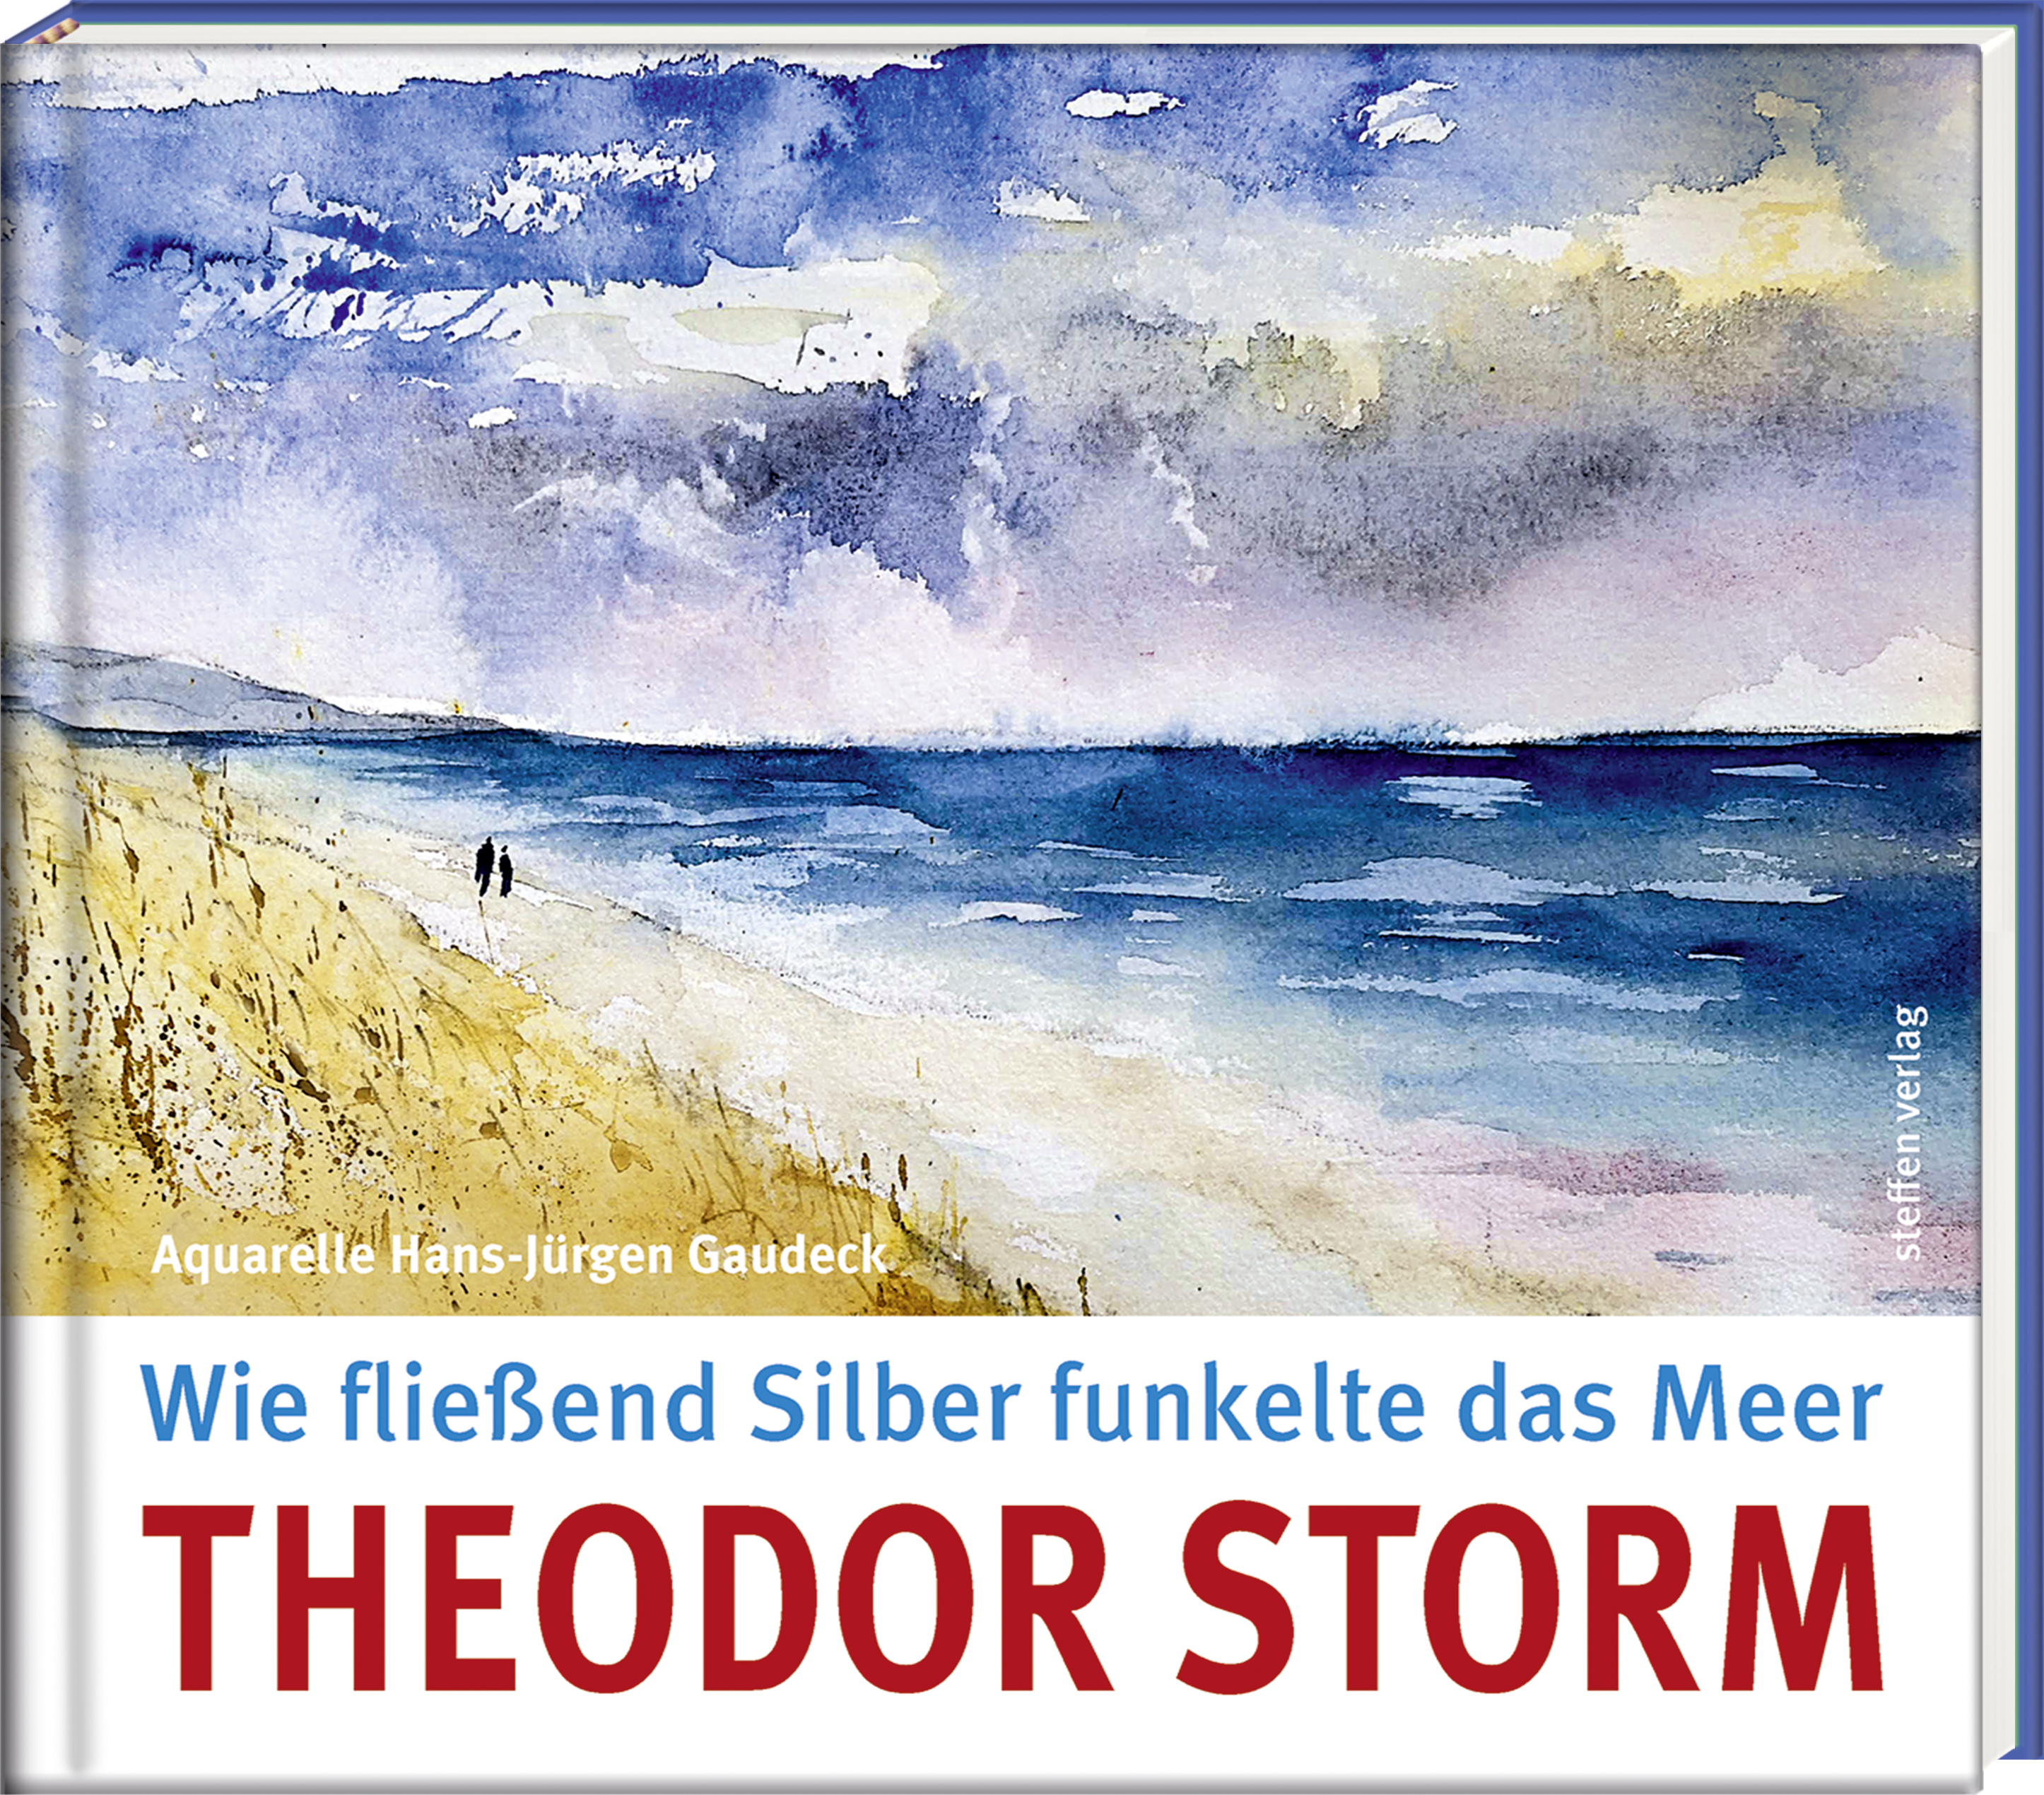 Aquarelle von Hans-Jürgen Gaudeck zu Theodor Storm